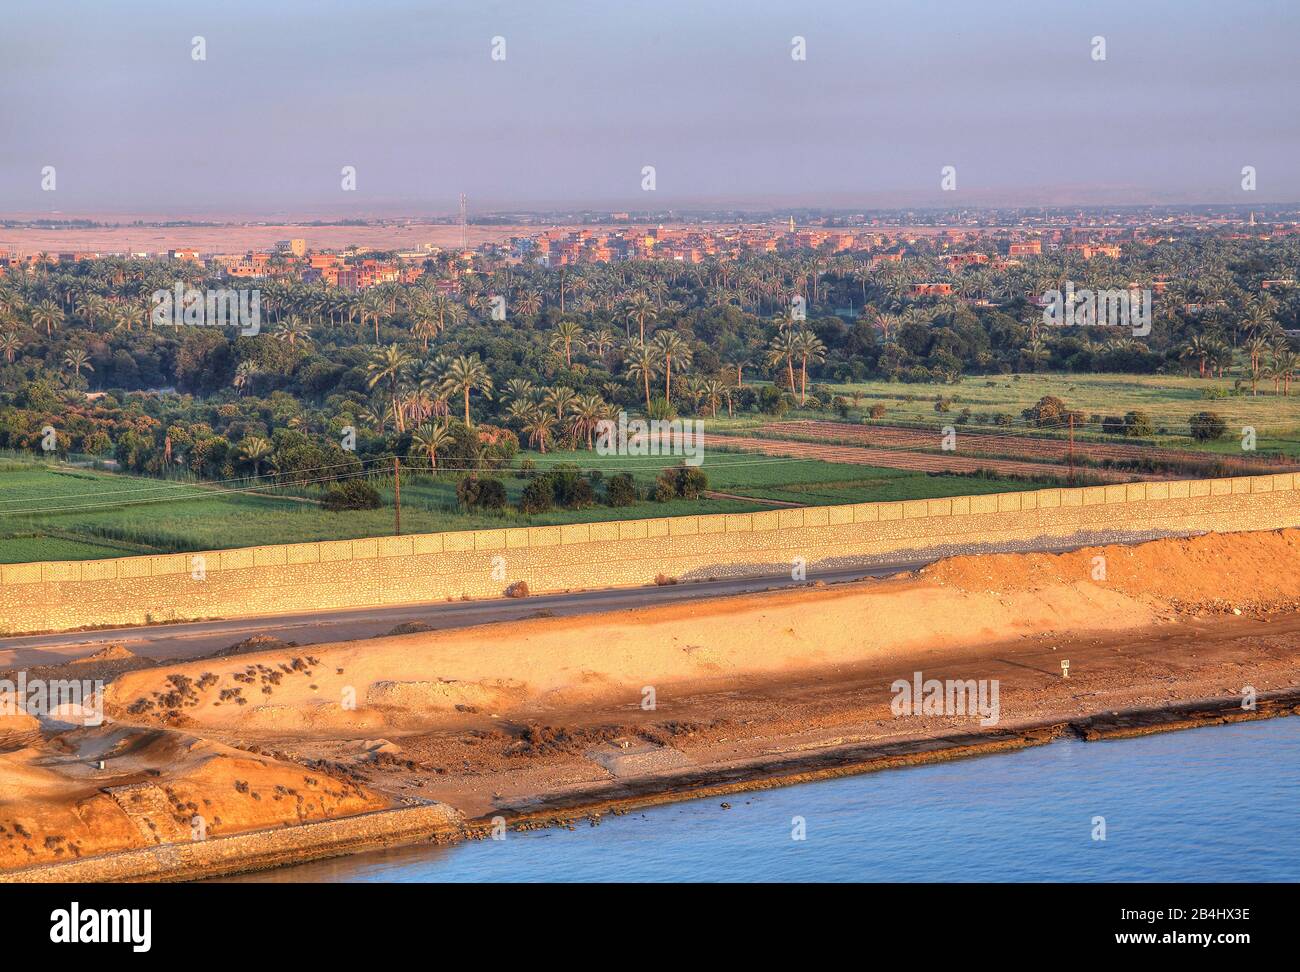 Rive occidentale avec champs et palmiers de datte au canal de Suez (canal de Suez), Egypte Banque D'Images